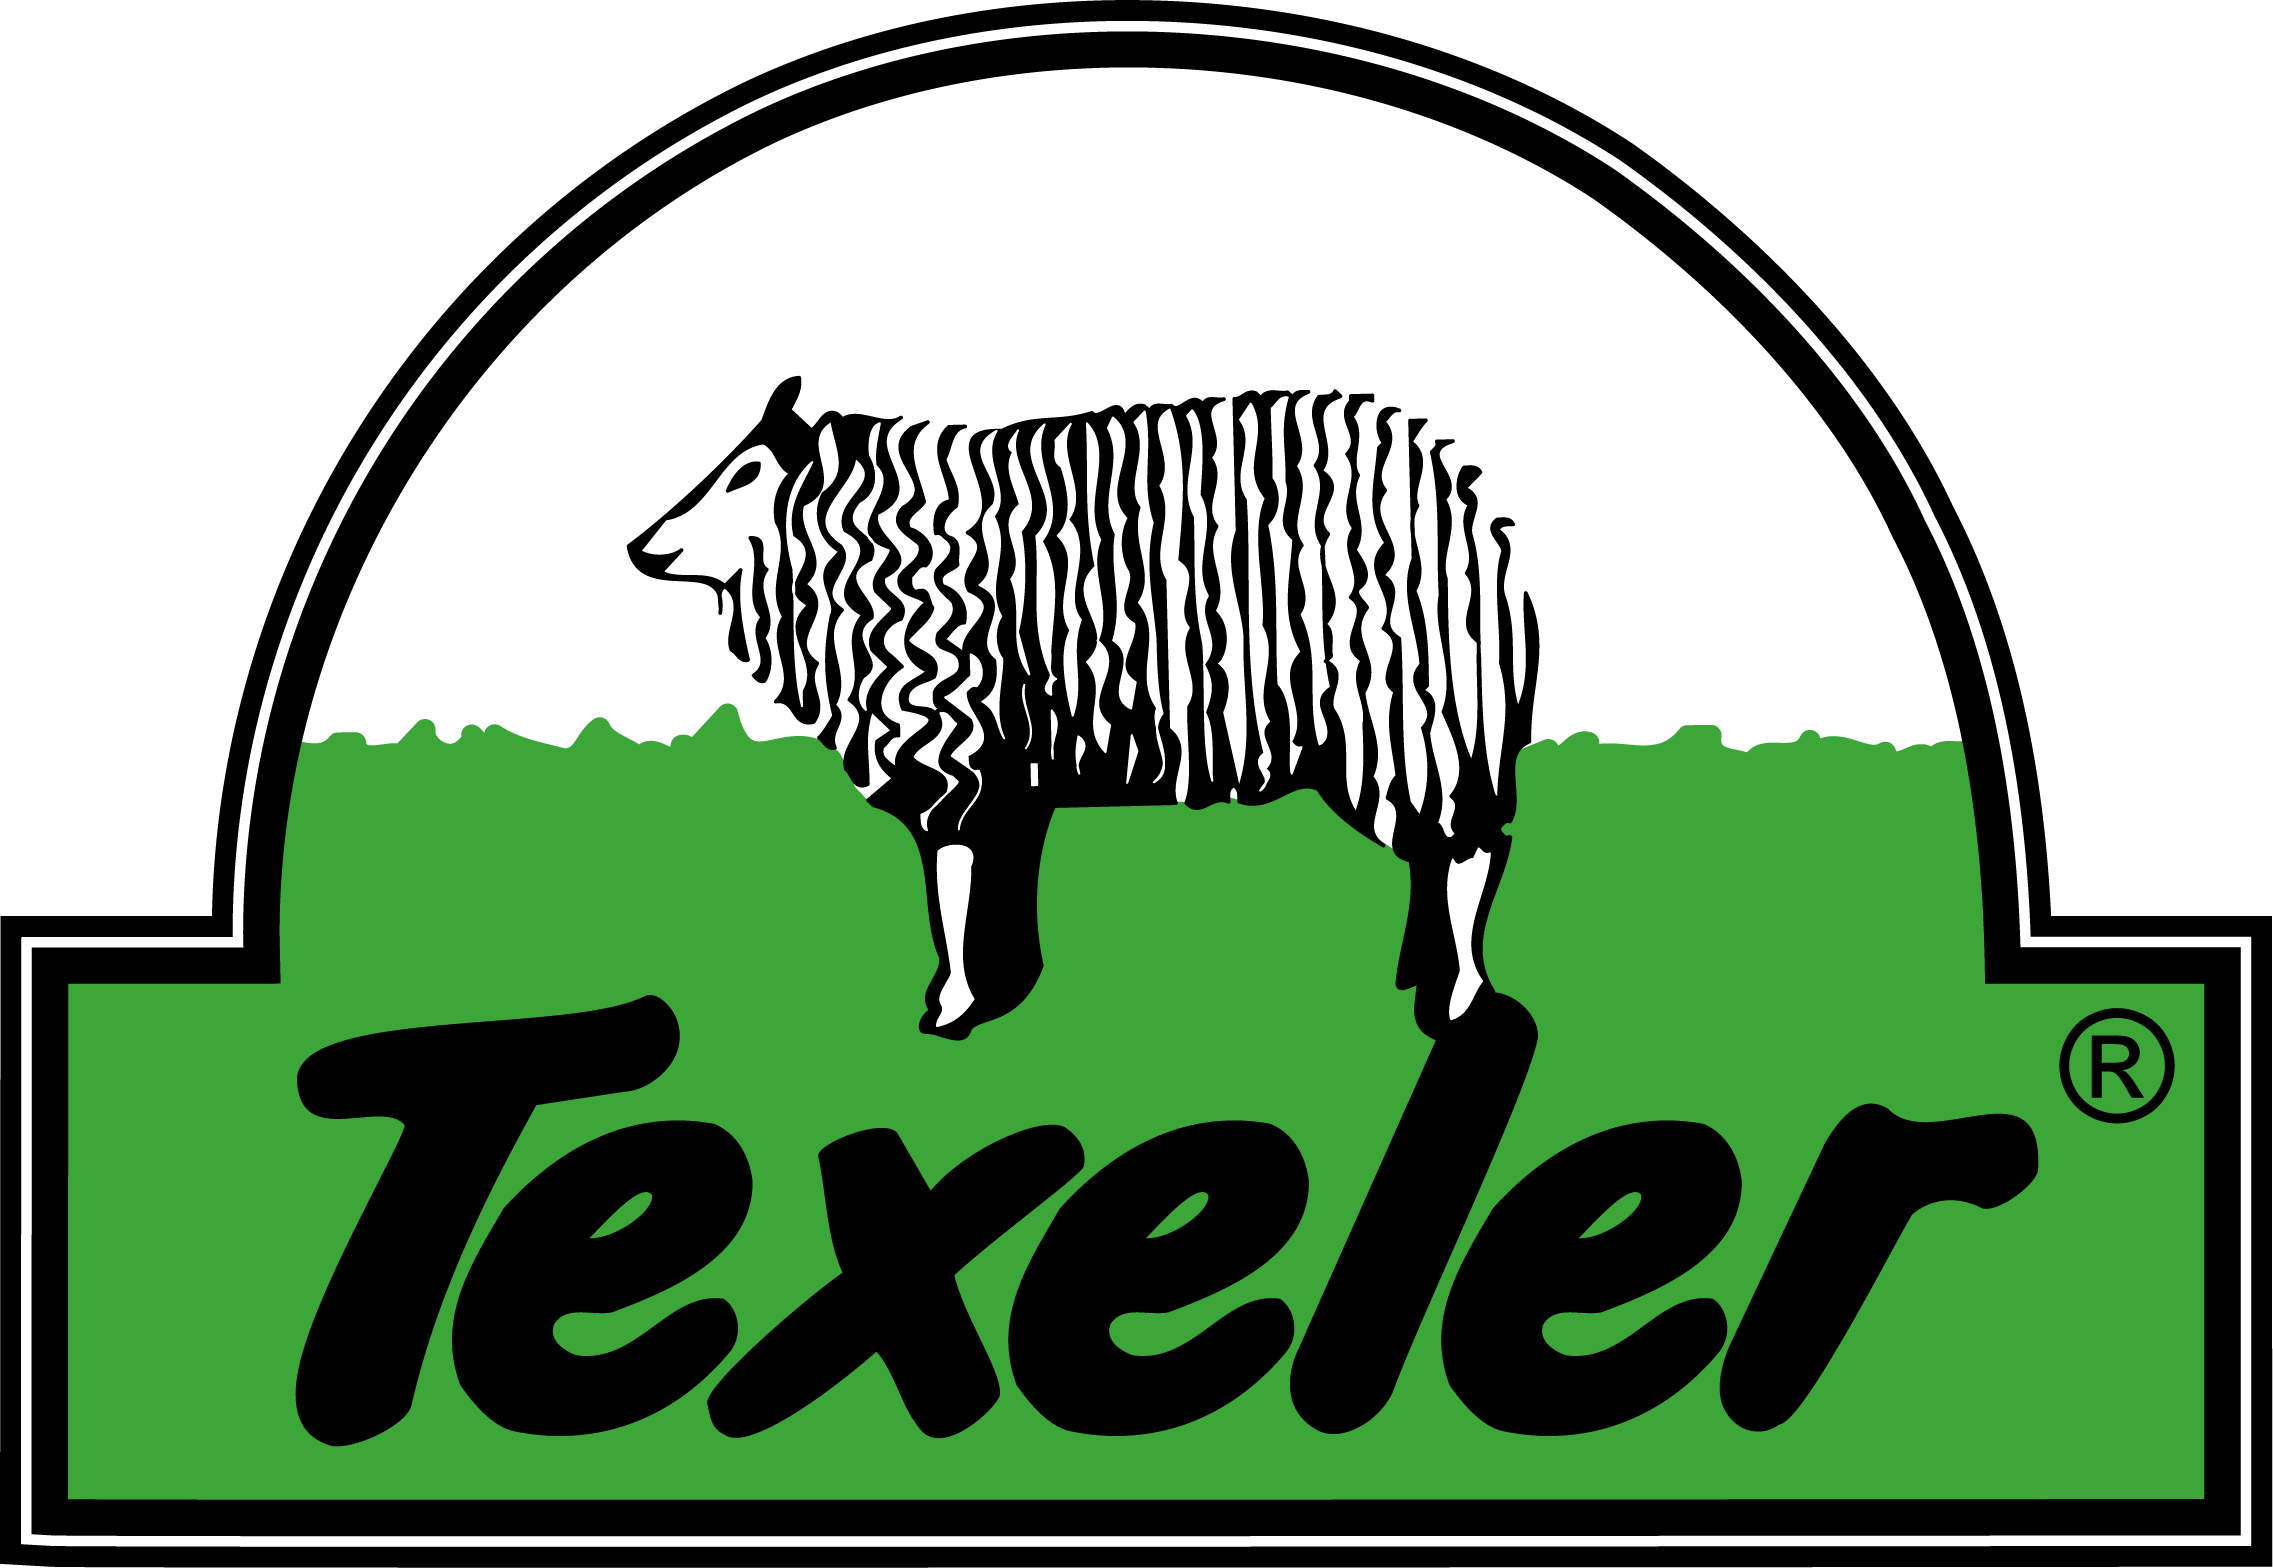 Texeler logo outline